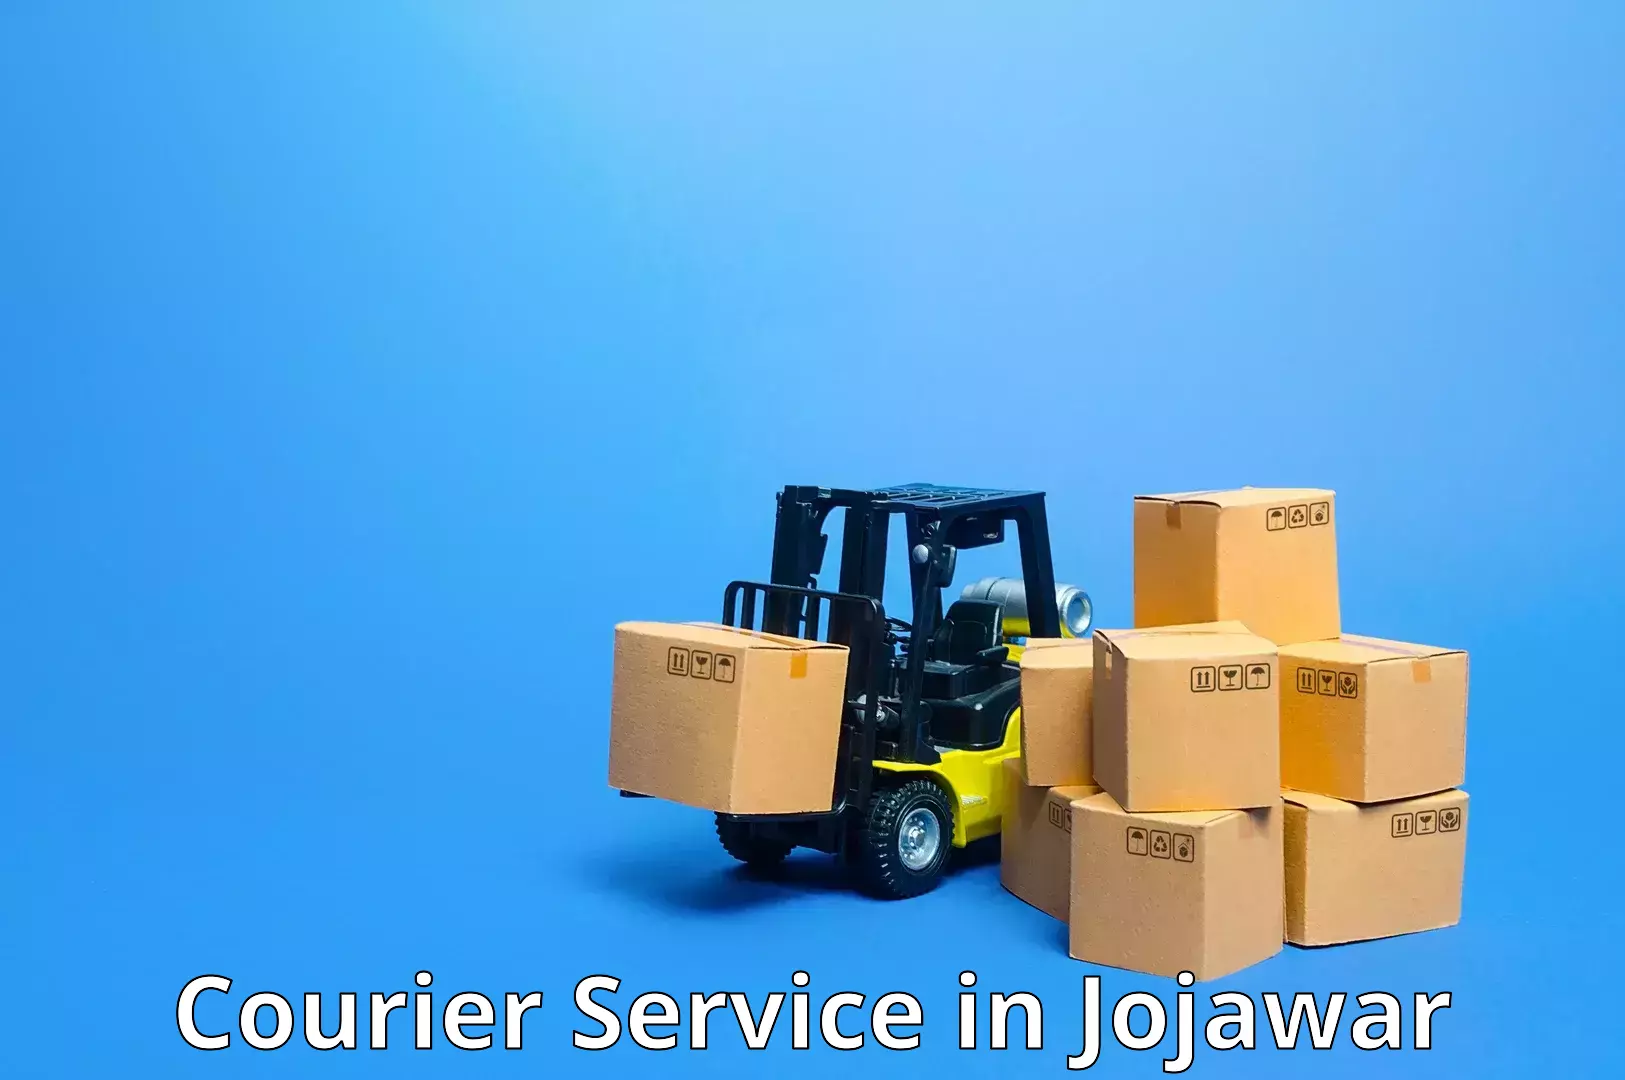 Heavyweight shipping in Jojawar